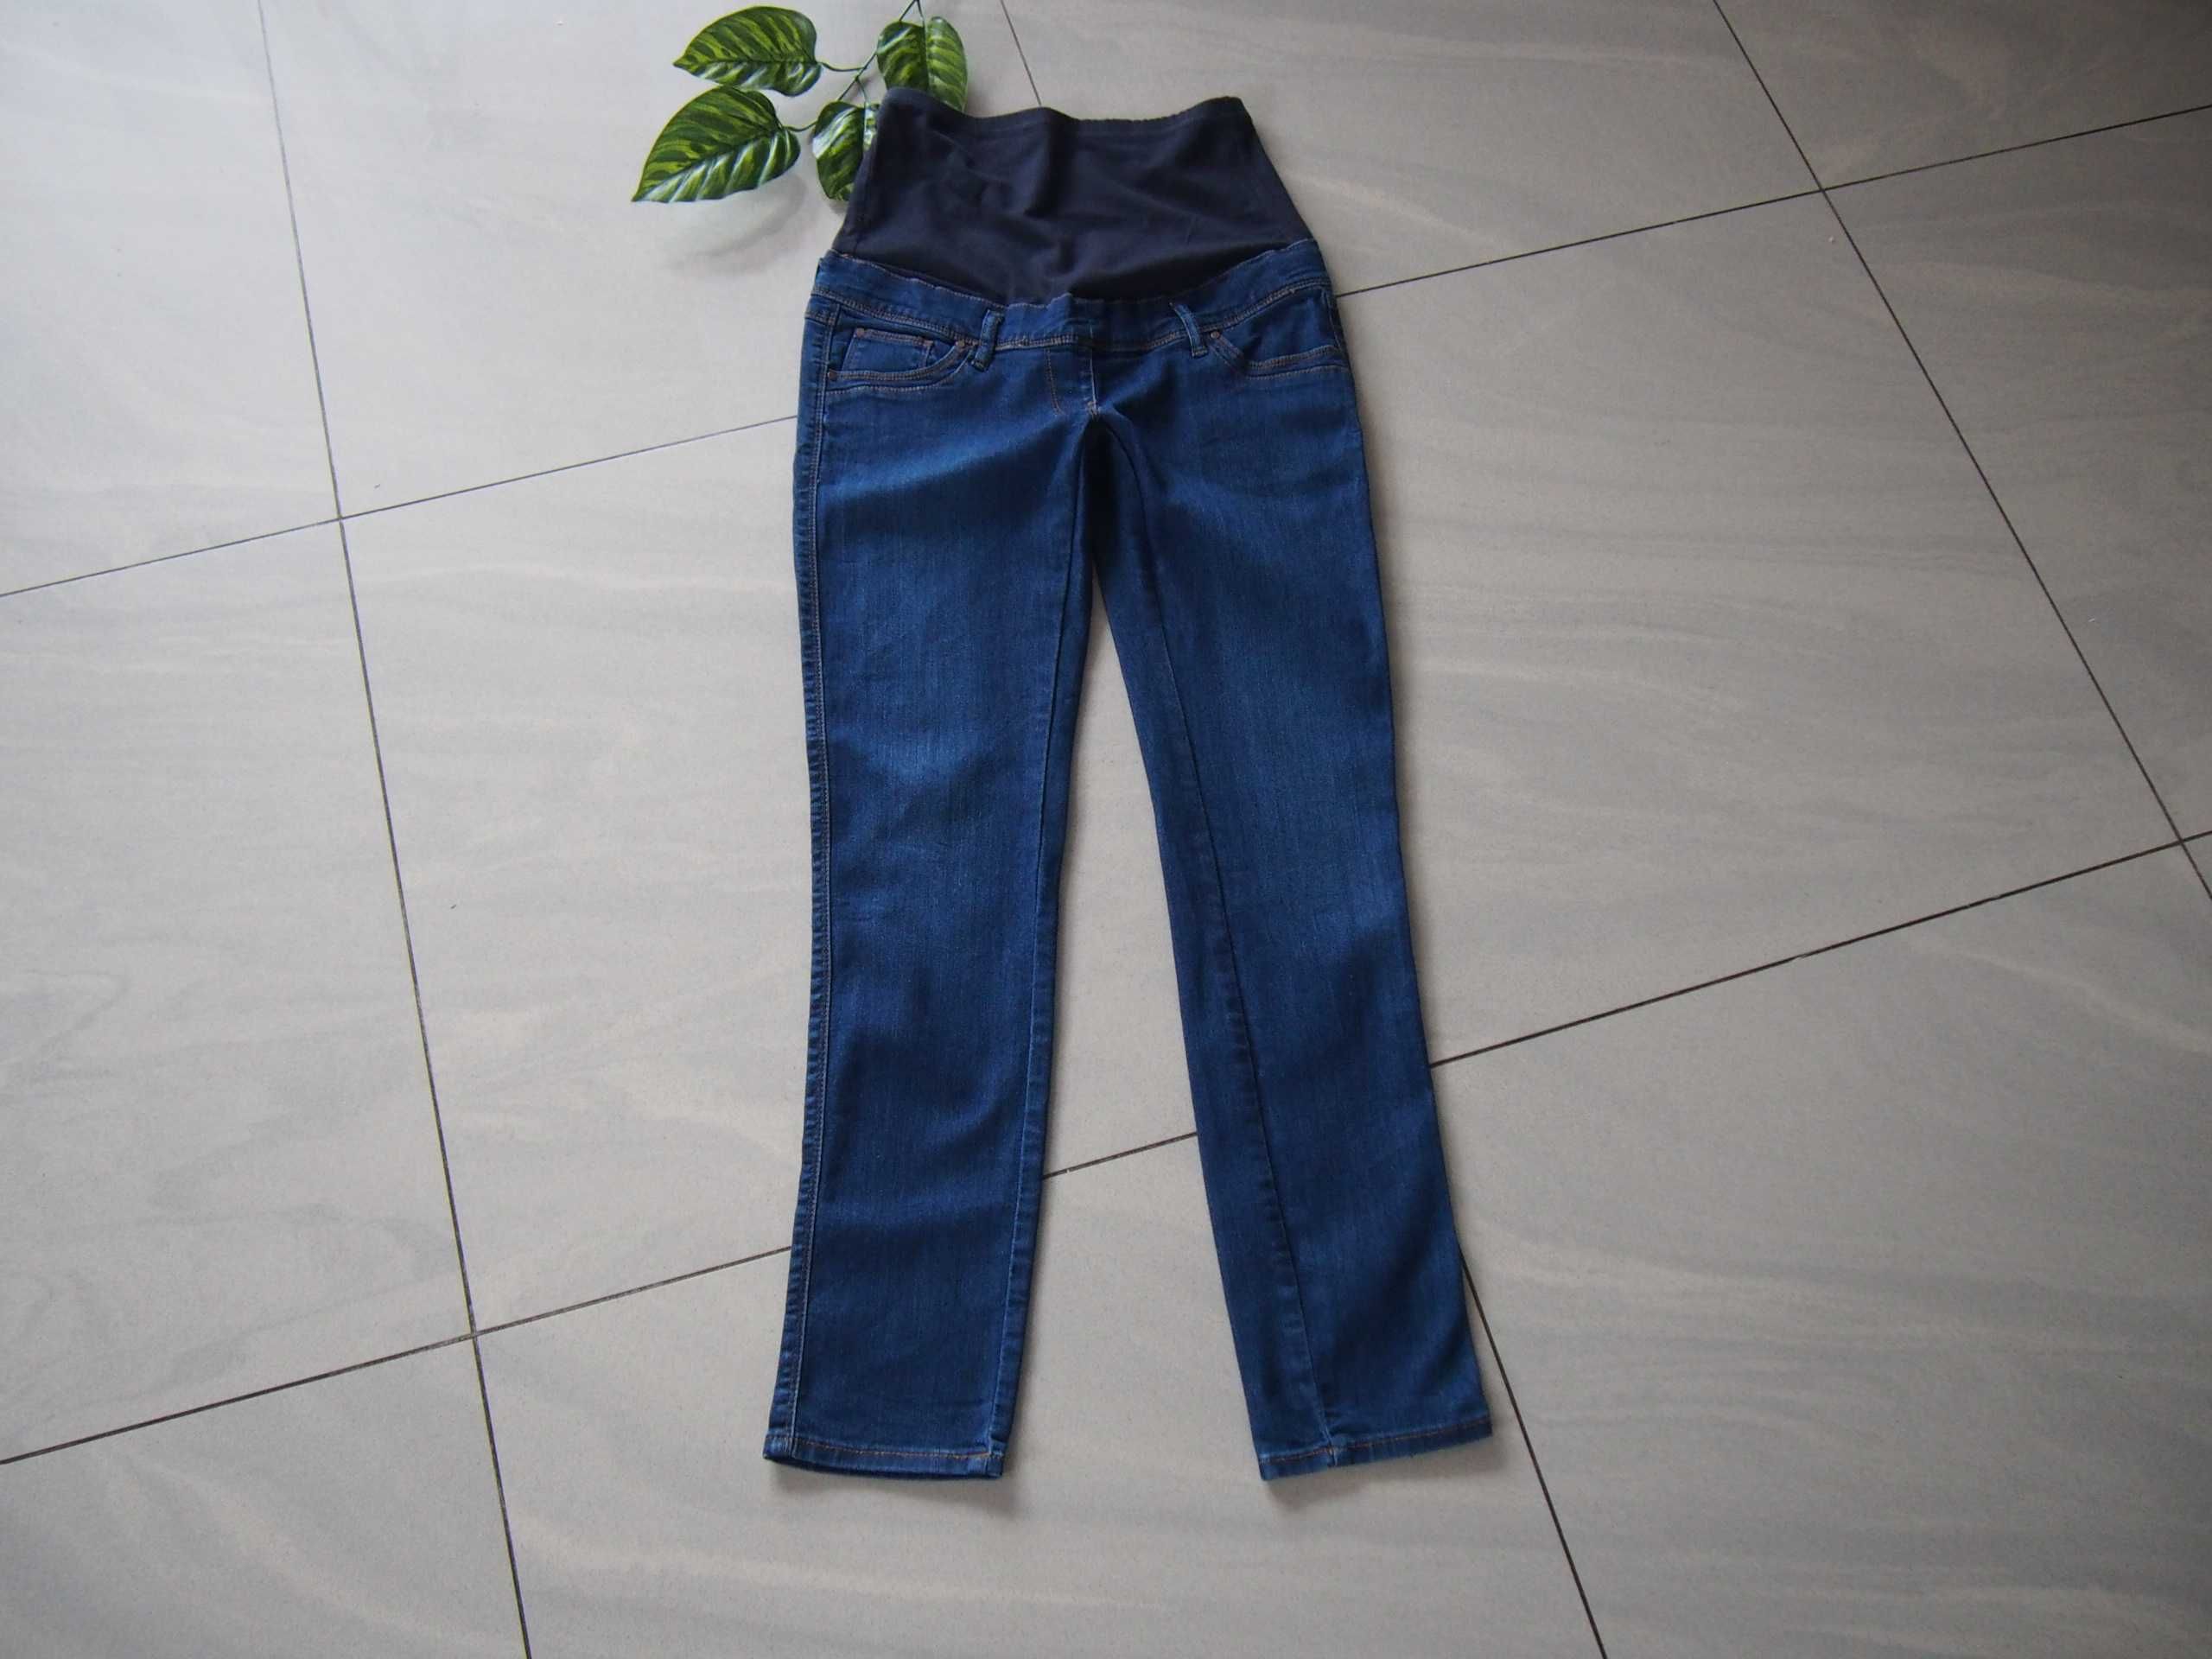 Spodnie ciążowe XS/S C&A jeansy bawełna